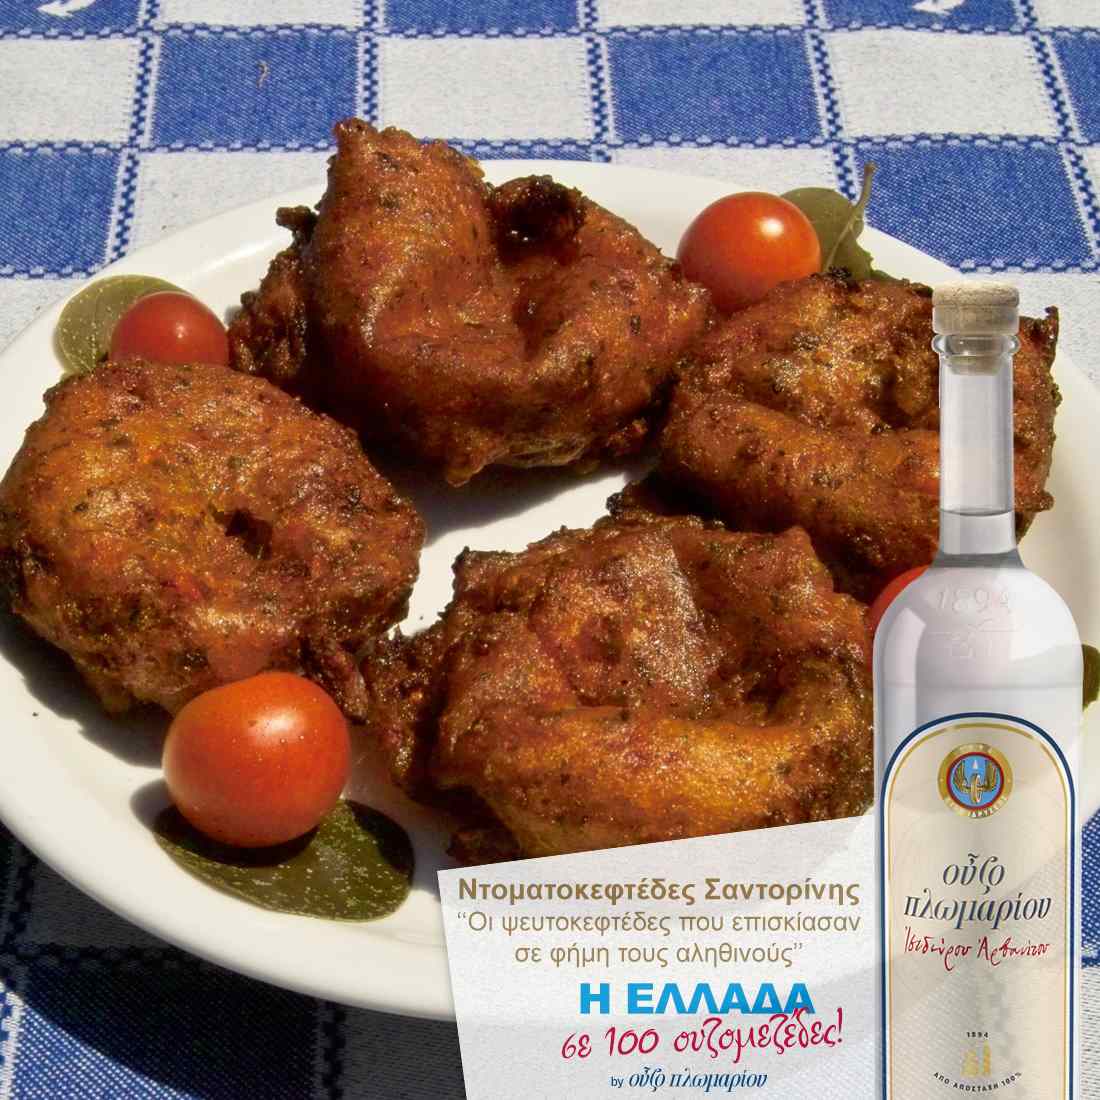 Ντοματοκεφτέδες Σαντορίνης - Ουζομεζέδες - Greek Gastronomy Guide